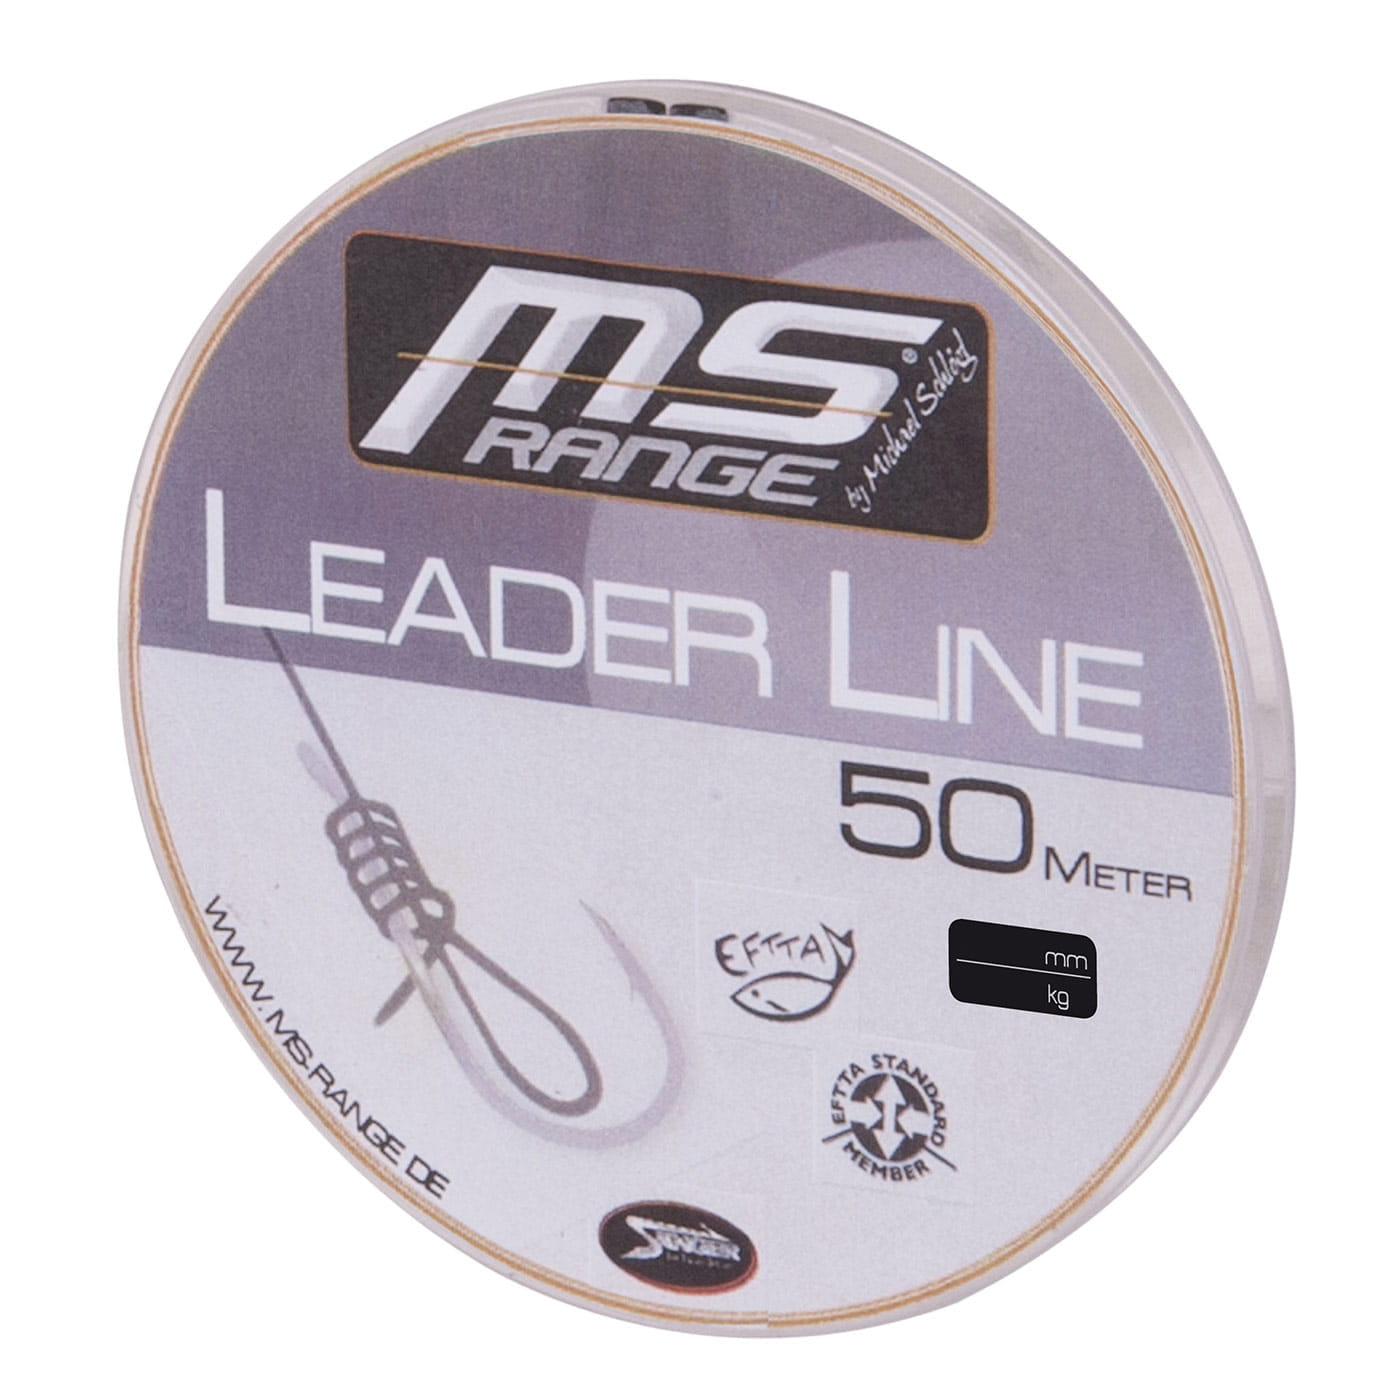 MS Range Leader Line 50m